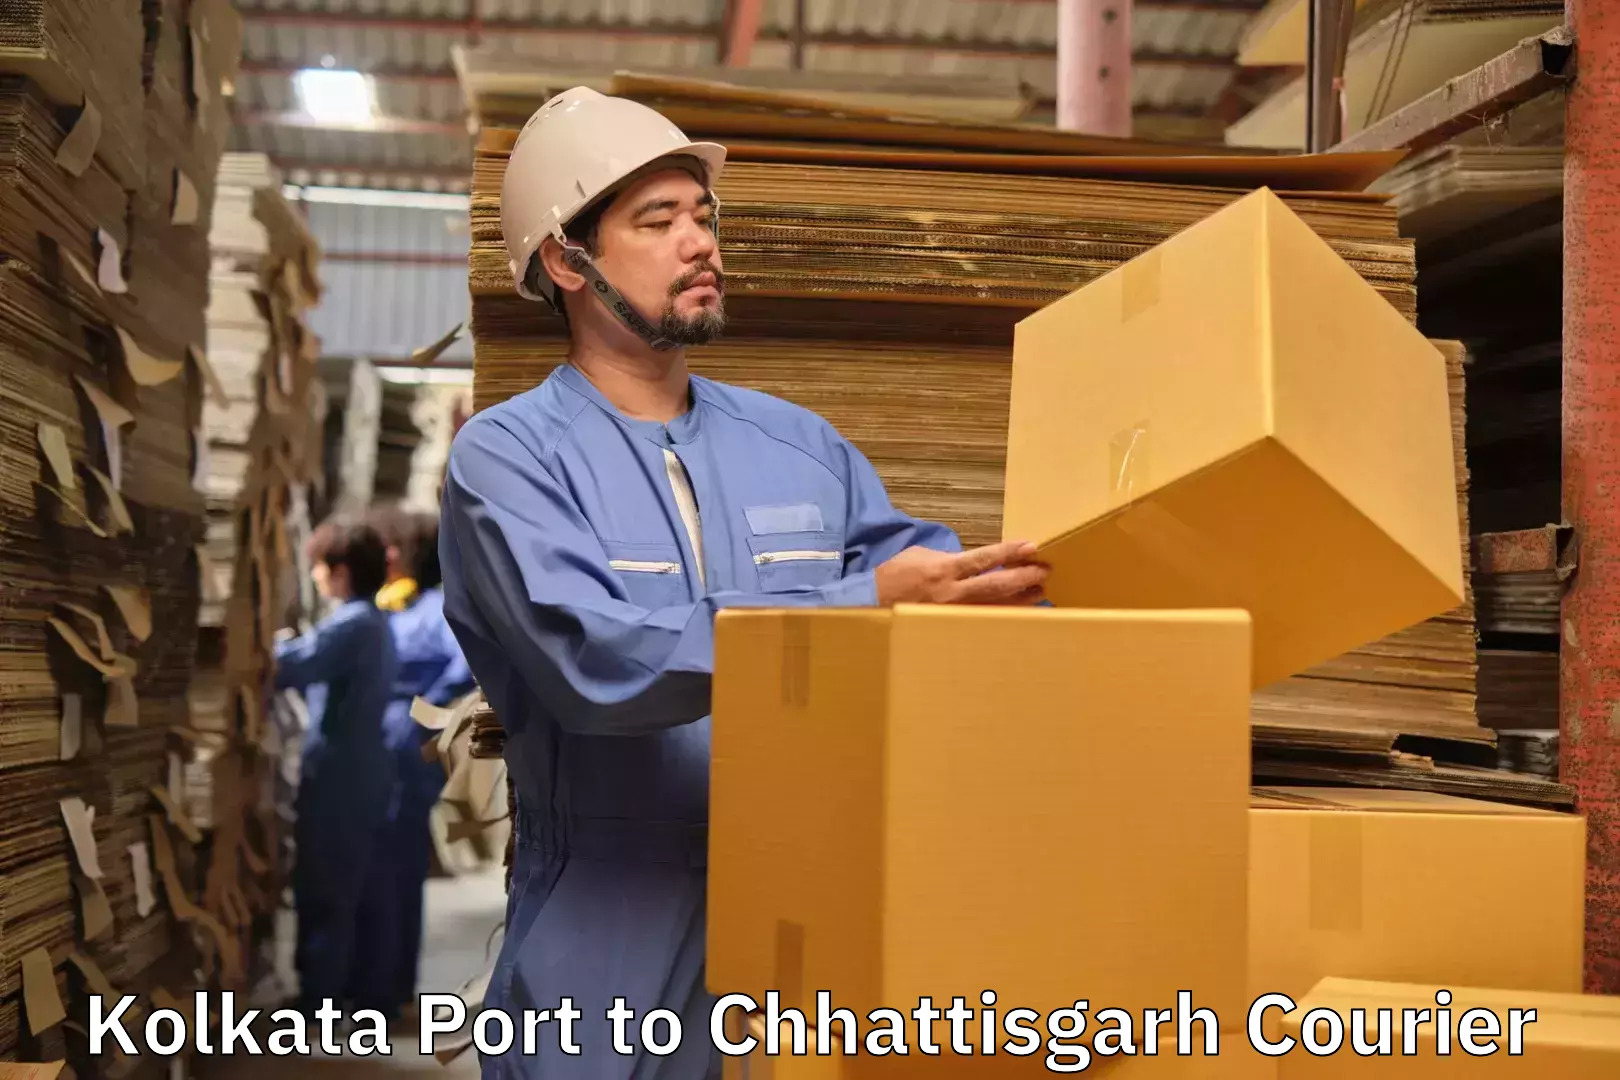 Baggage shipping service Kolkata Port to Abhanpur